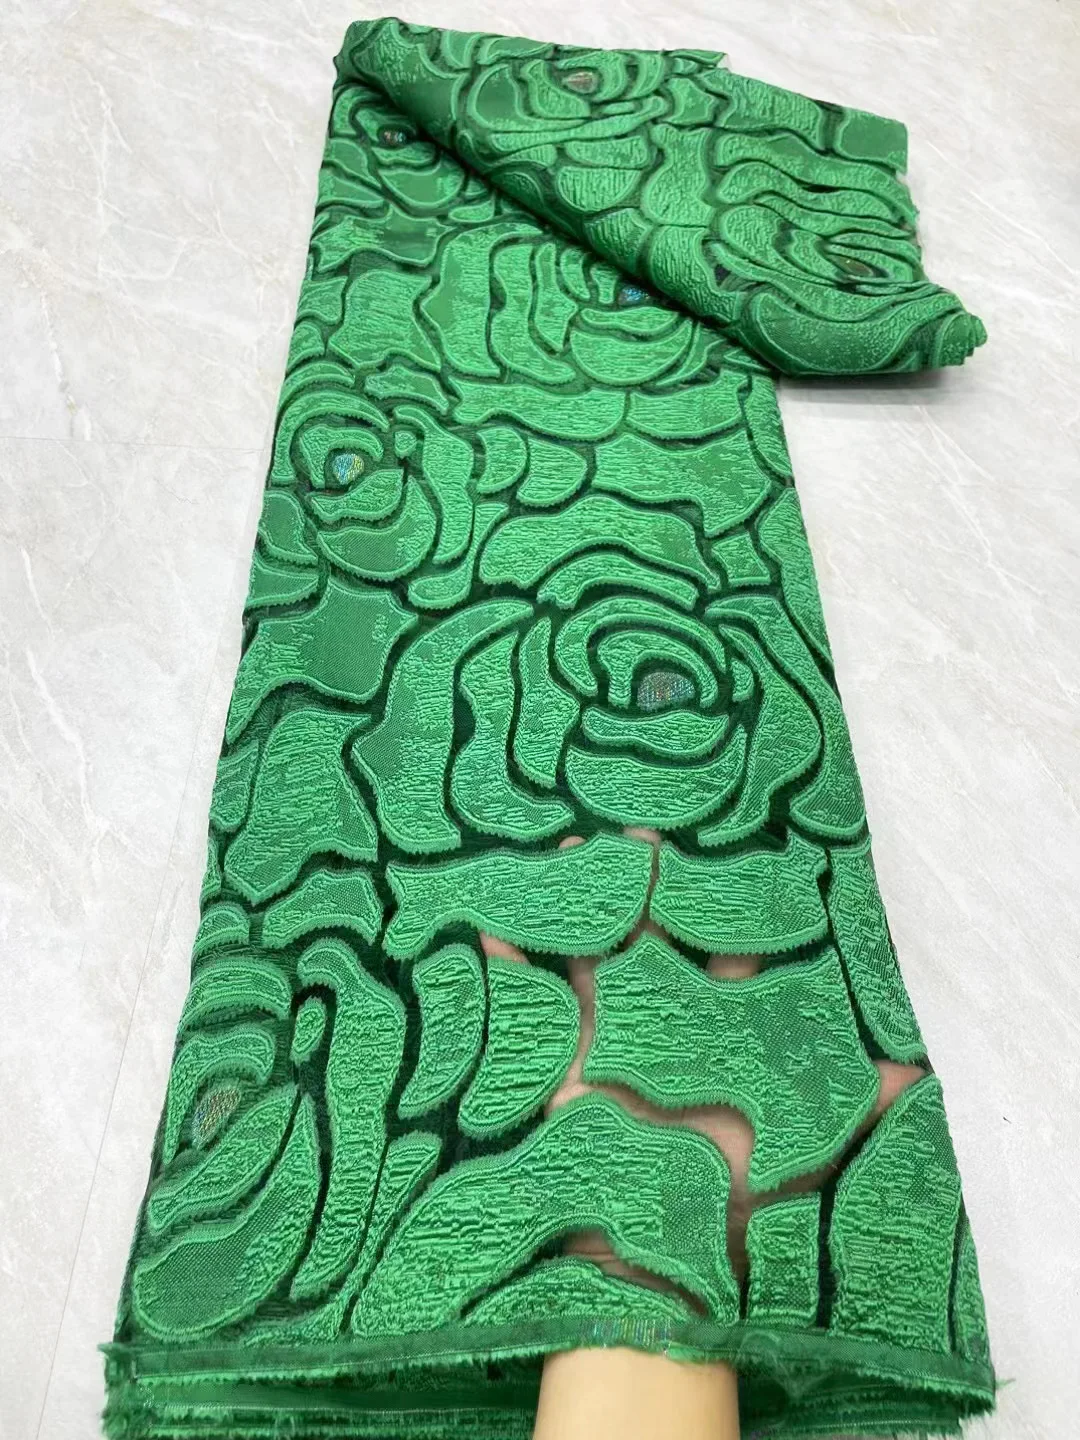 Weißer afrikanischer Brokat spitzens toff grün rot französisch geprägter Organza-Jacquard-Stoff zum Nähen von Kleidungs stücken Frauen Party kleid 5 Meter